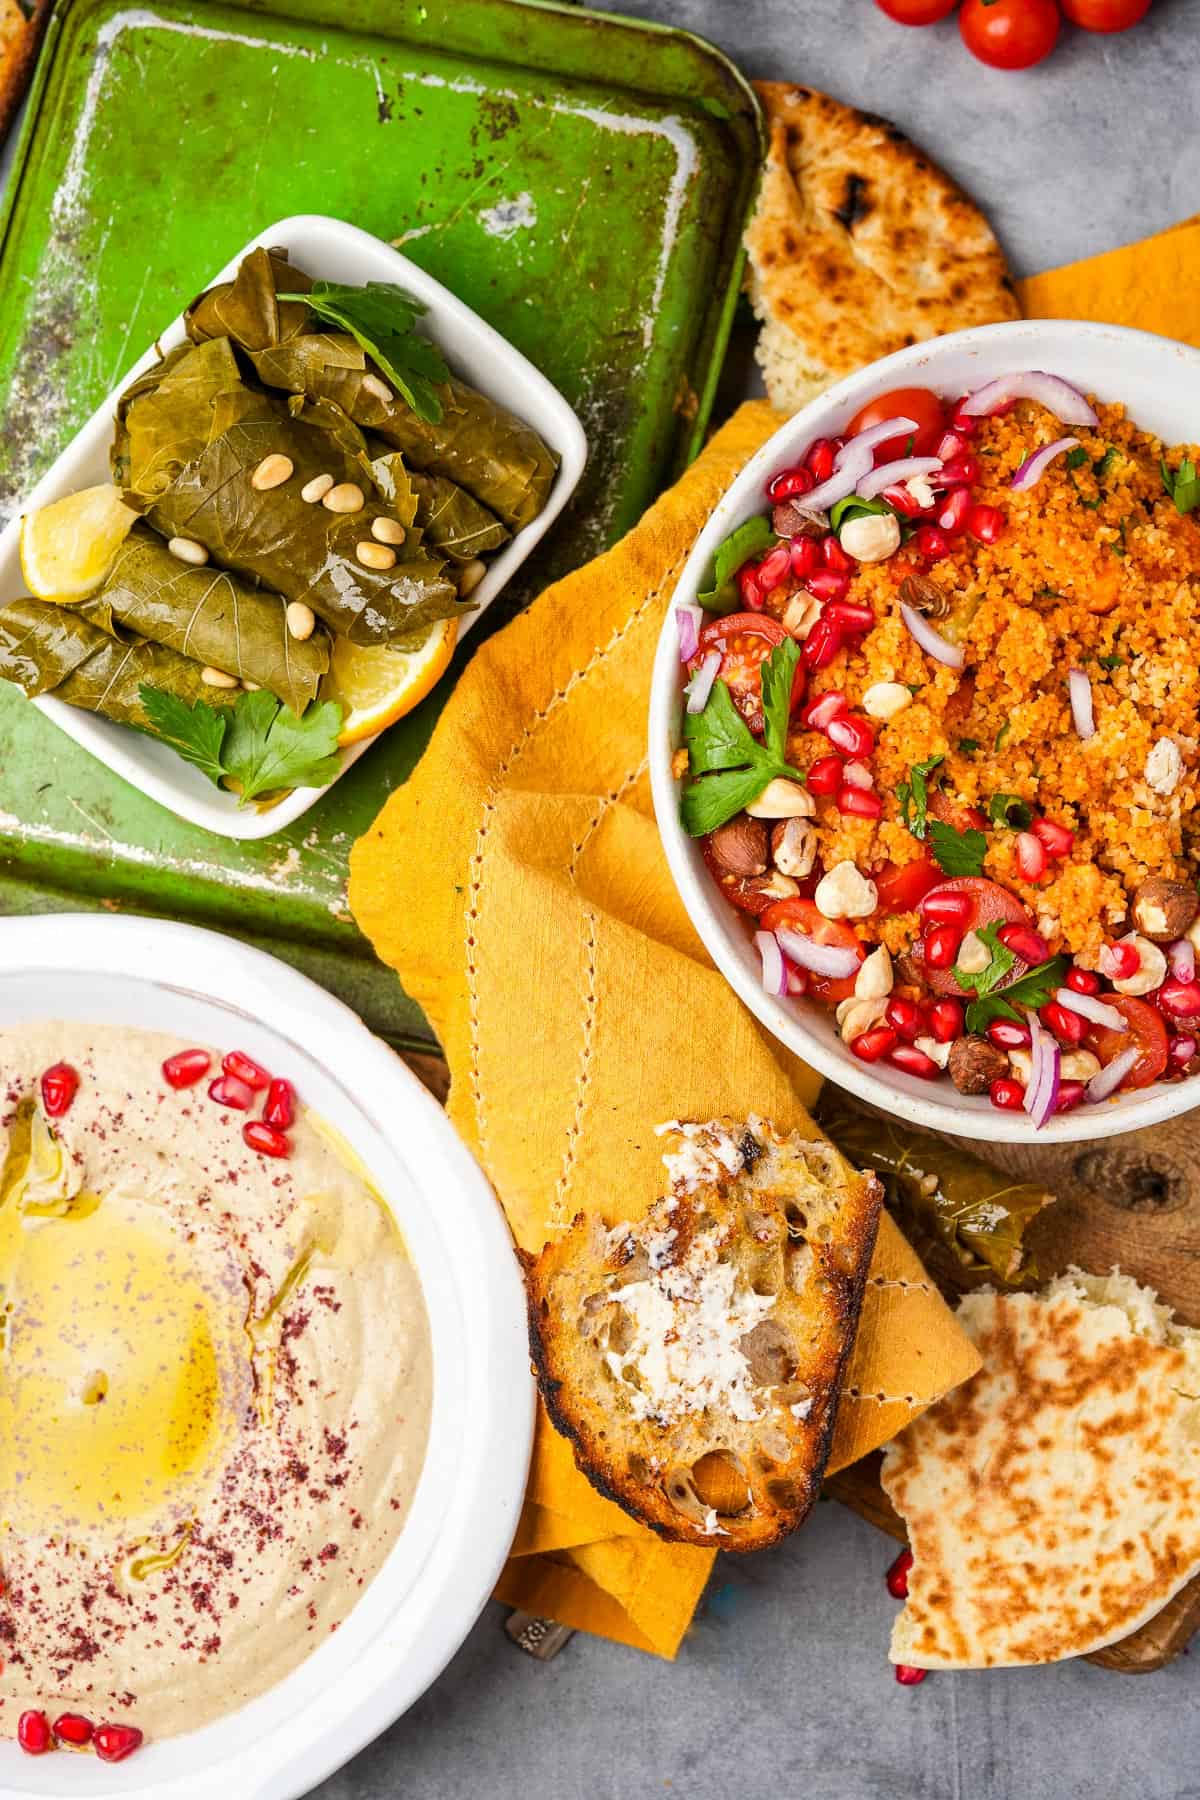 Mutabal, pita bread, stuffed grape leaves, and kisir salad on a table.